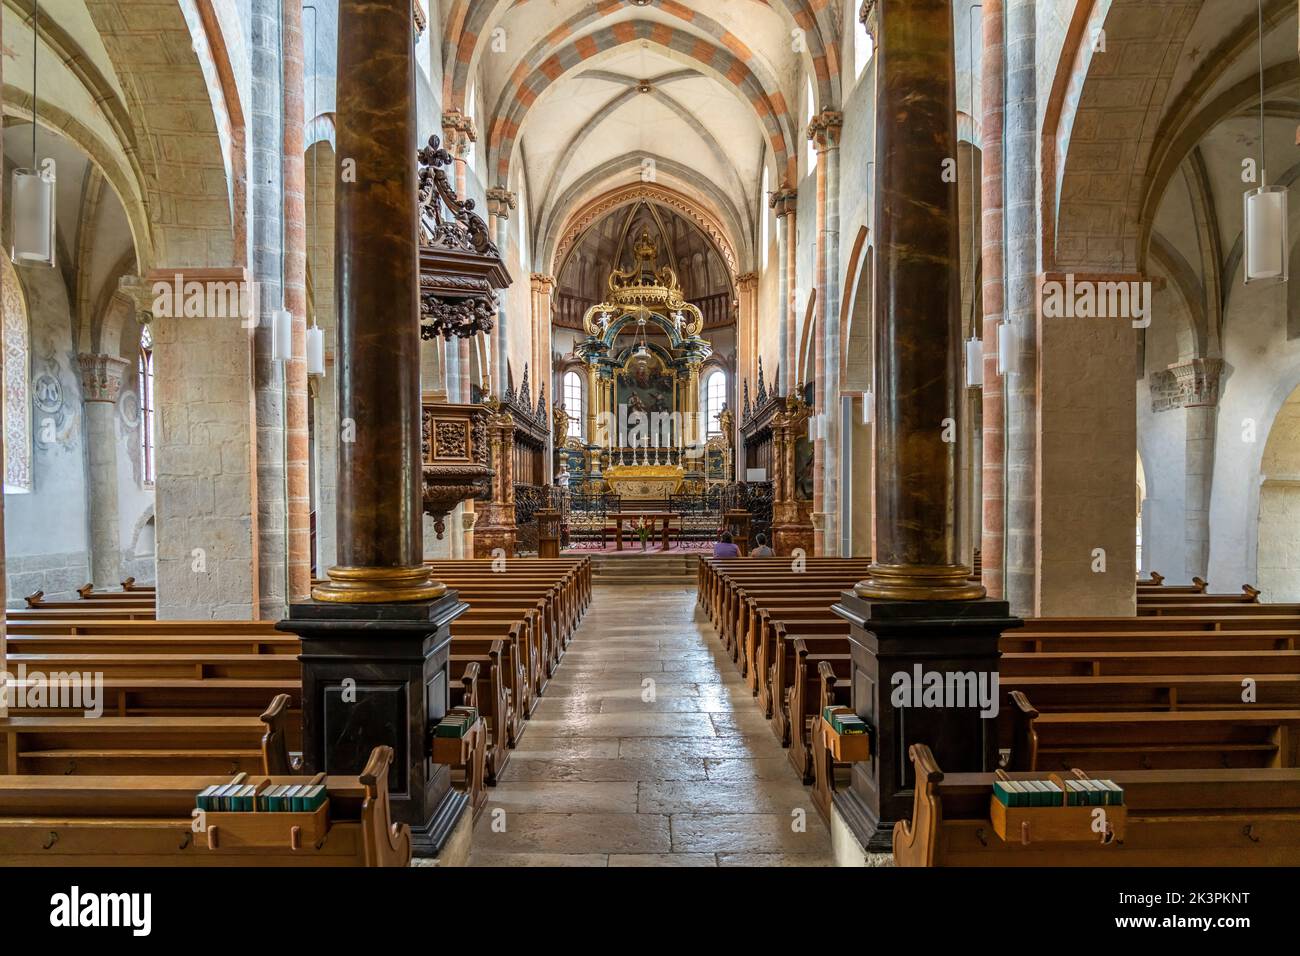 Innenraum der Stiftskirche in Saint-Ursanne, Schweiz, Europa |  The collegiate church interior,  Saint-Ursanne, Switzerland, Europe Stock Photo